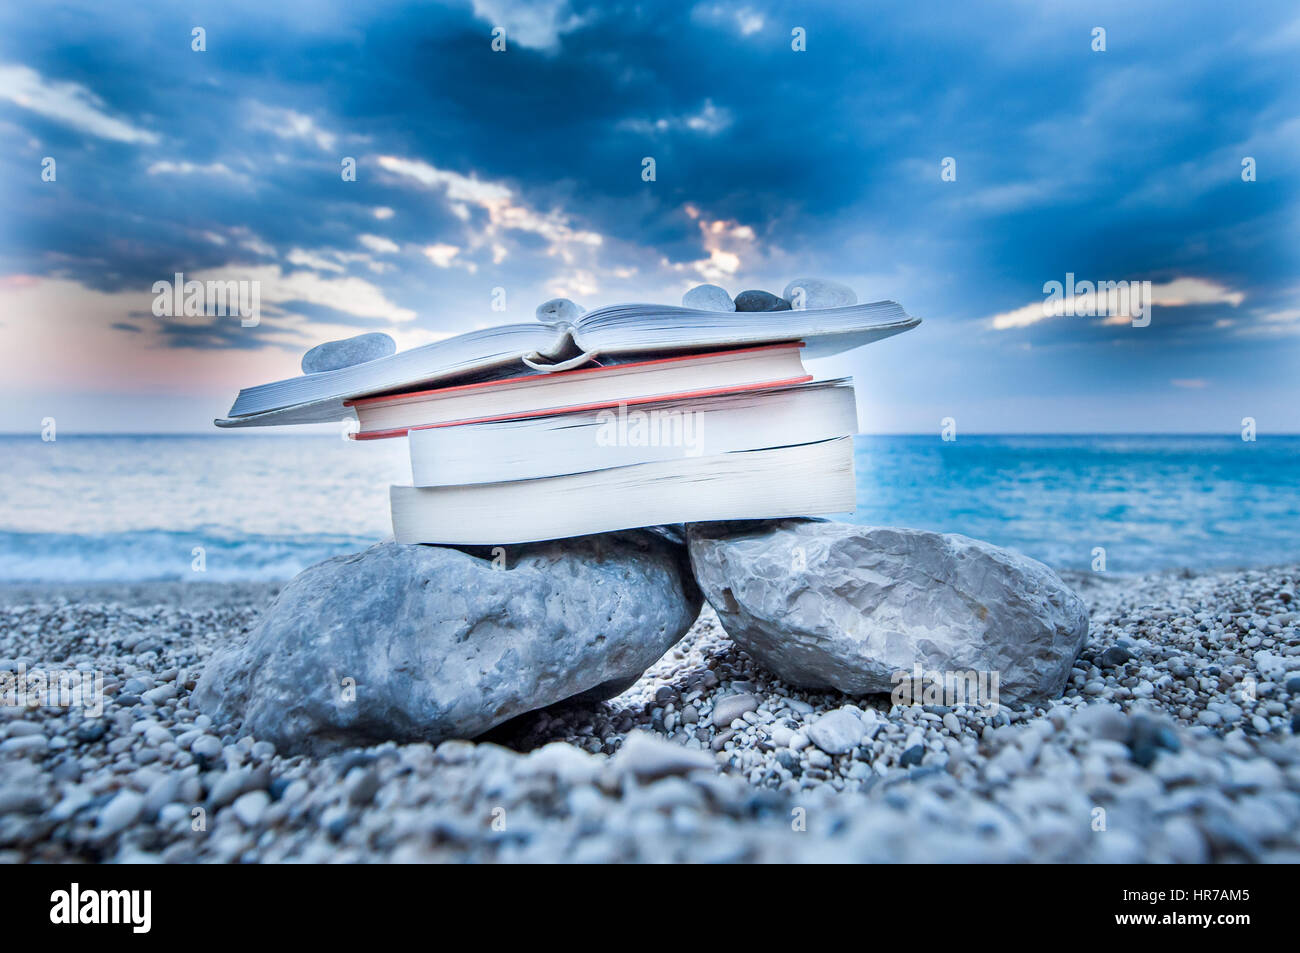 Plage à livre ouvert sur une pile de livres près de la mer en été, coucher du soleil Banque D'Images